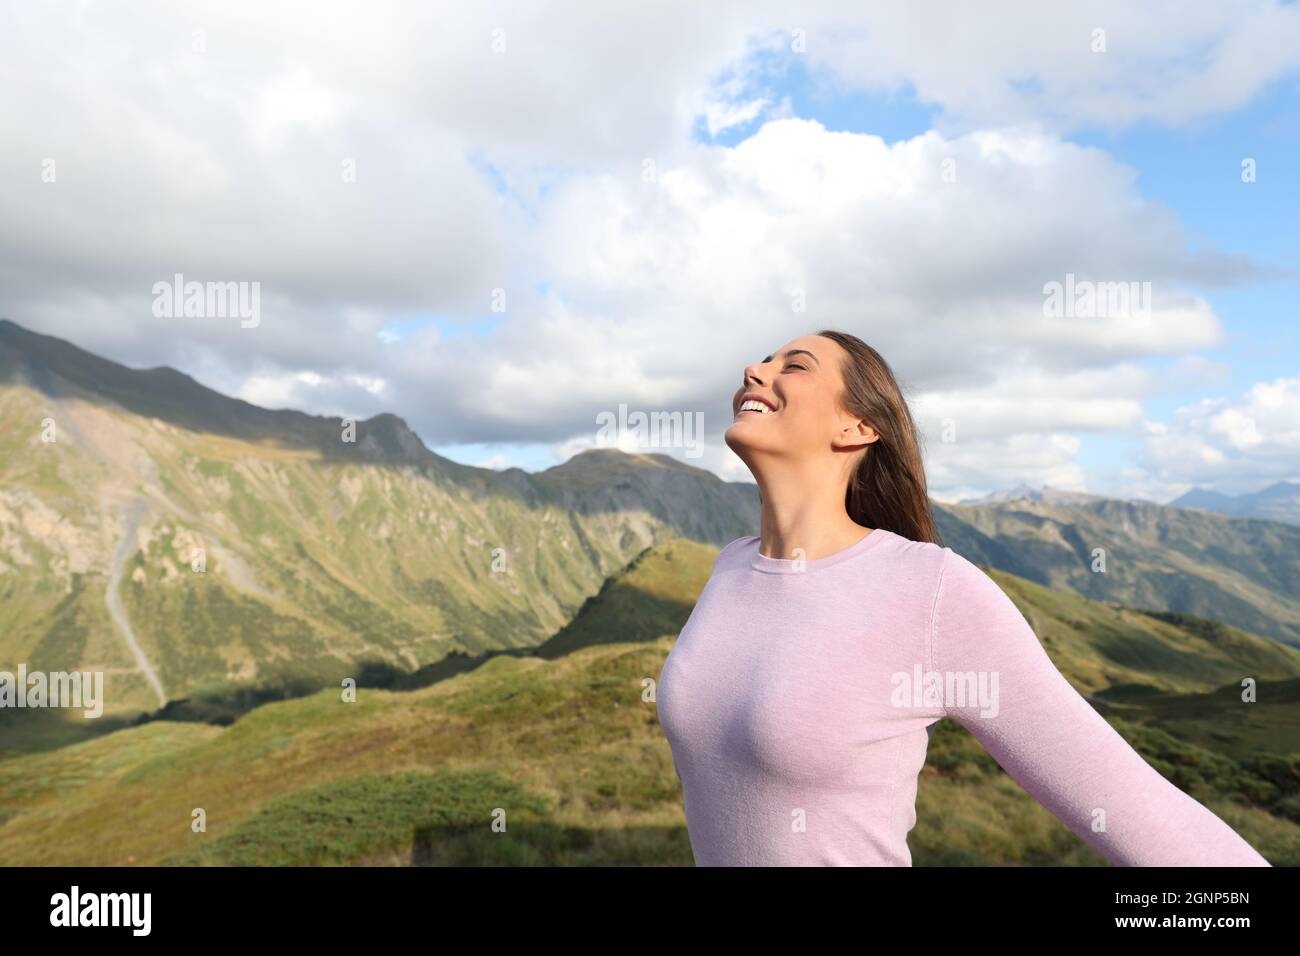 Une femme heureuse souriant respirant de l'air frais seul dans la nature Banque D'Images